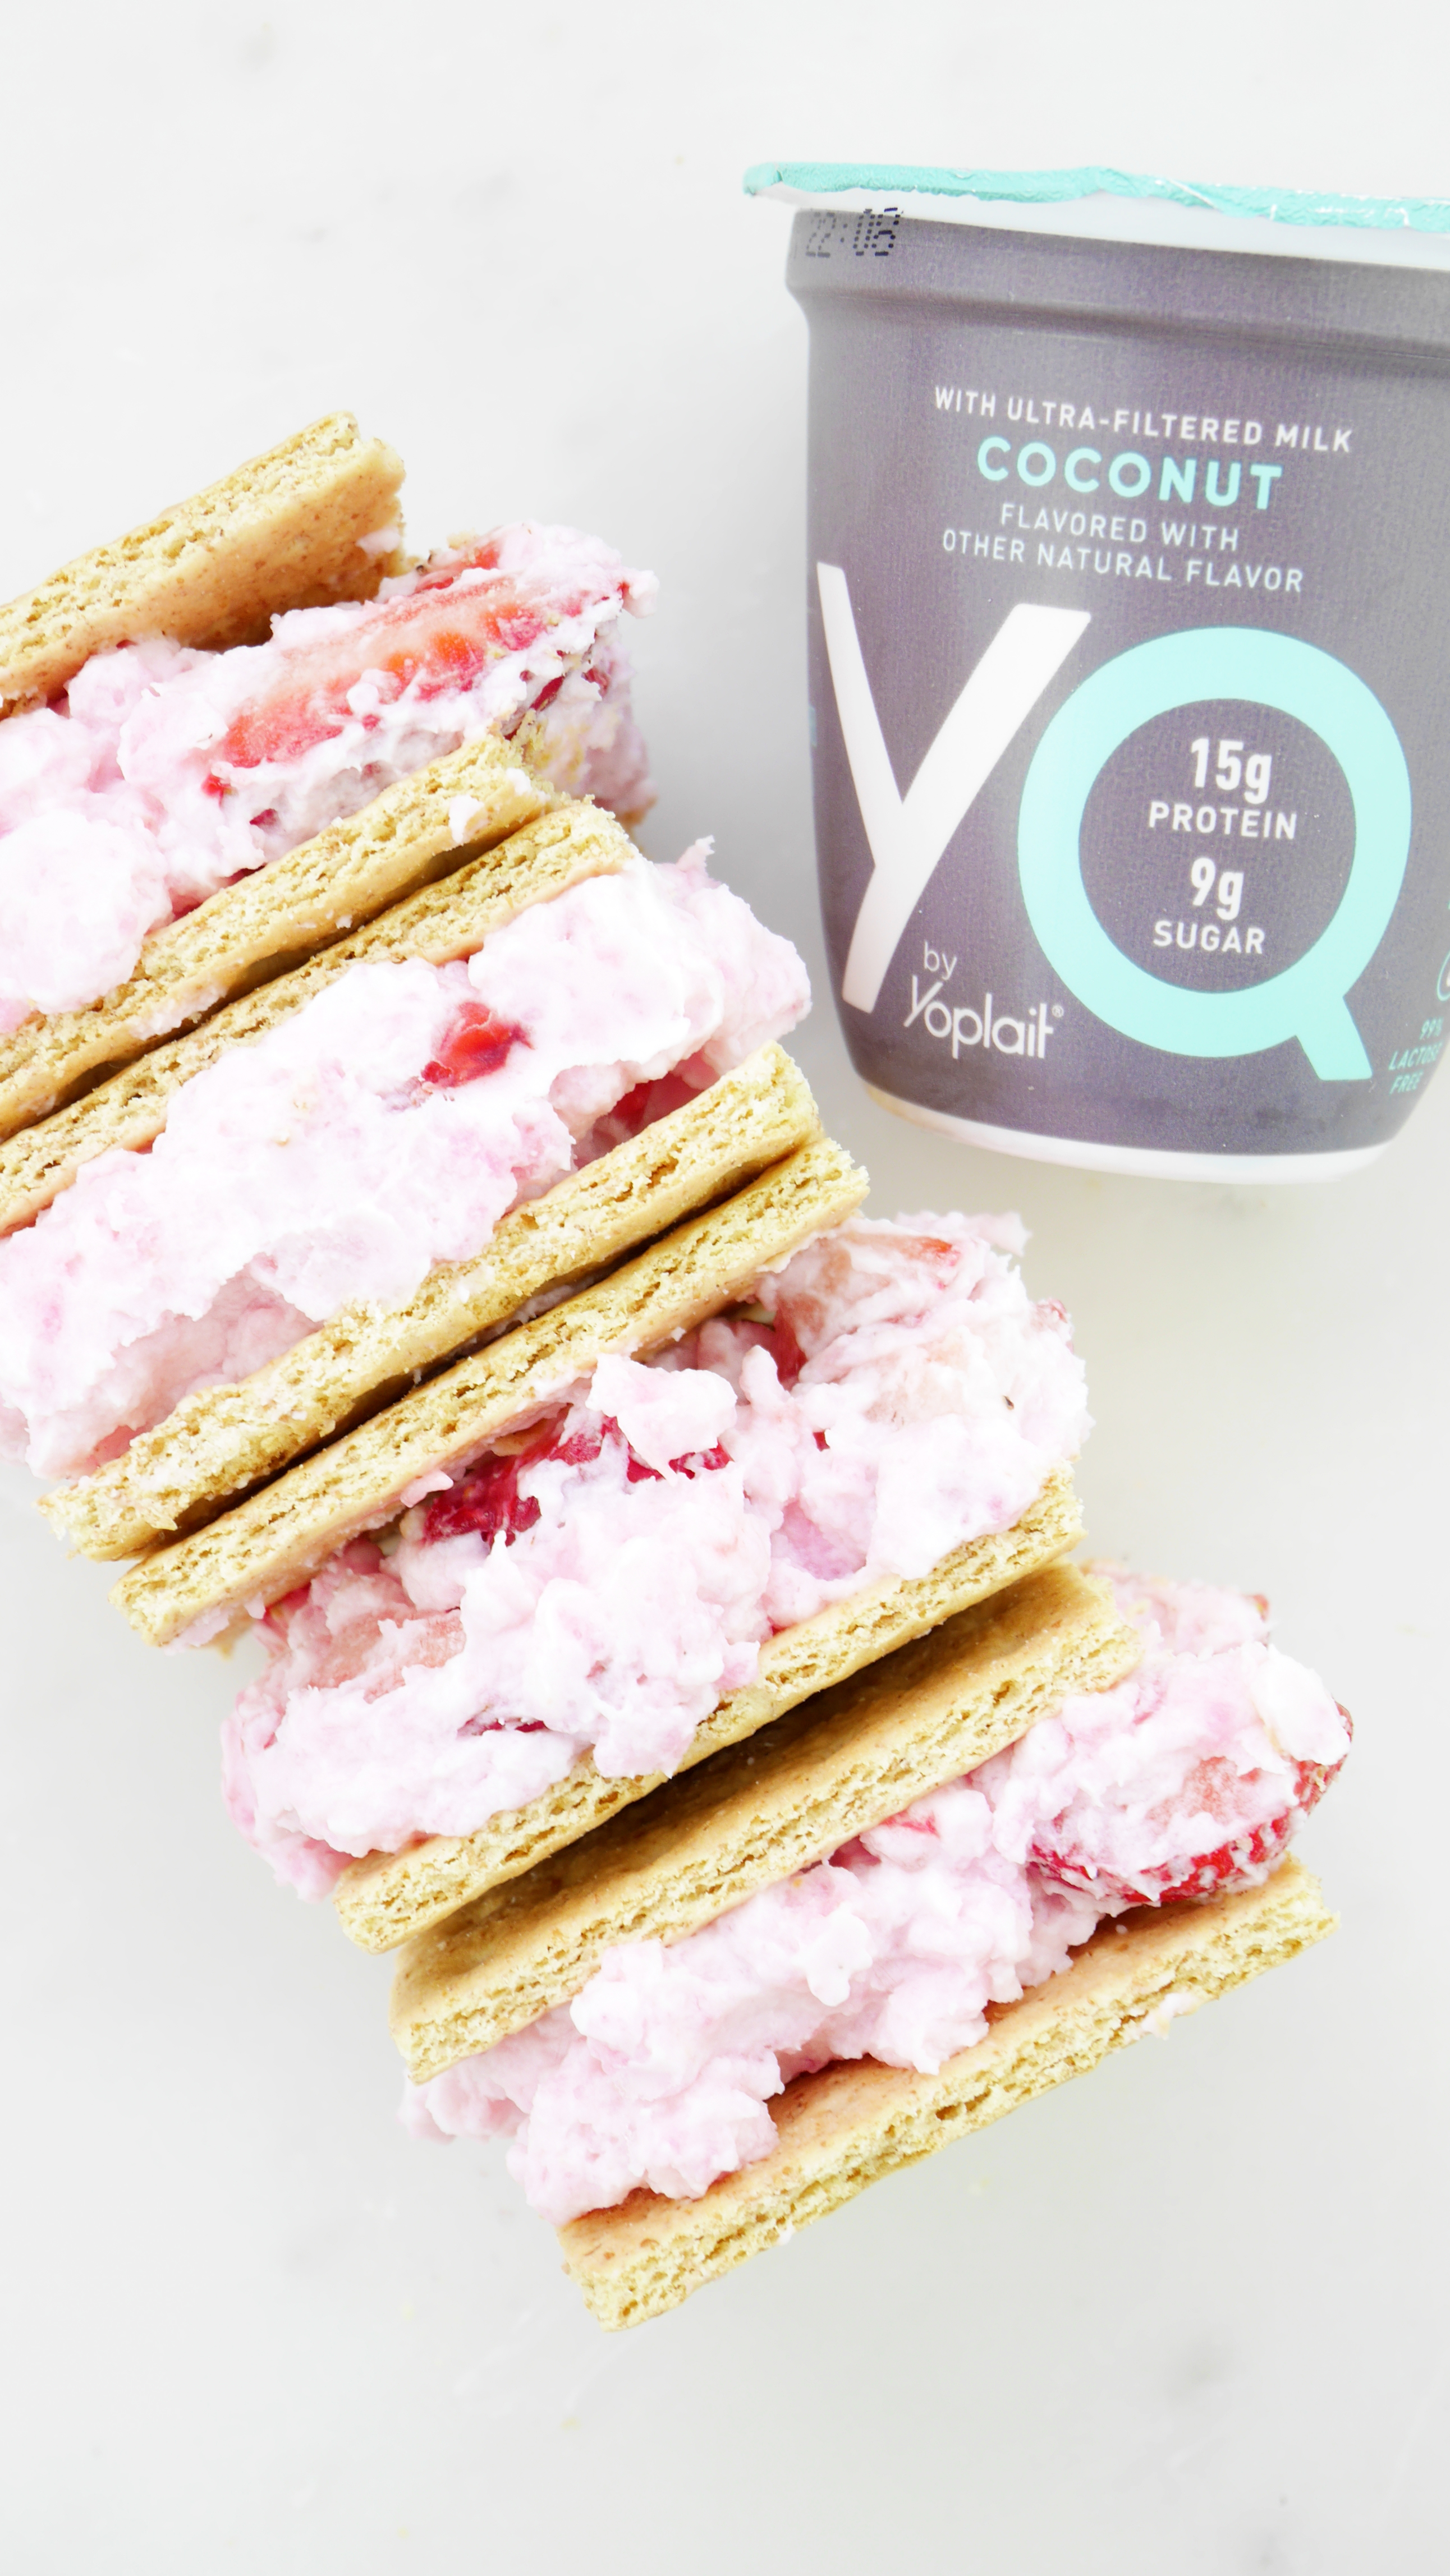 YQ by Yoplait yogurt